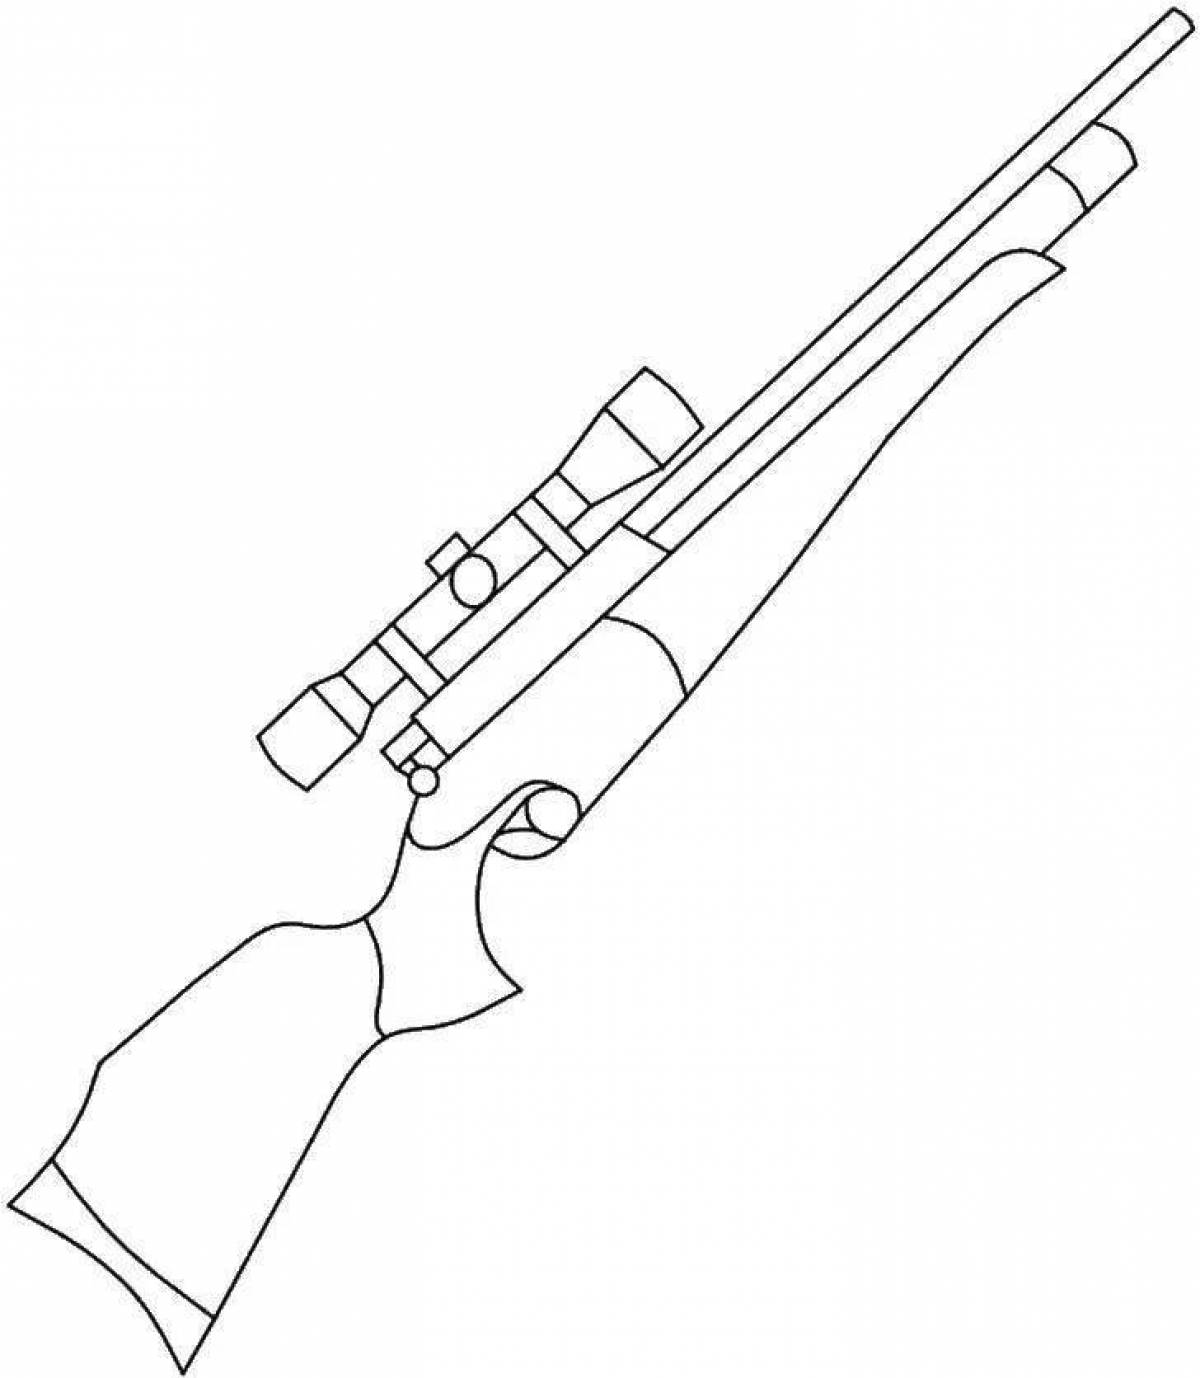 Раскраска снайперская винтовка radiant